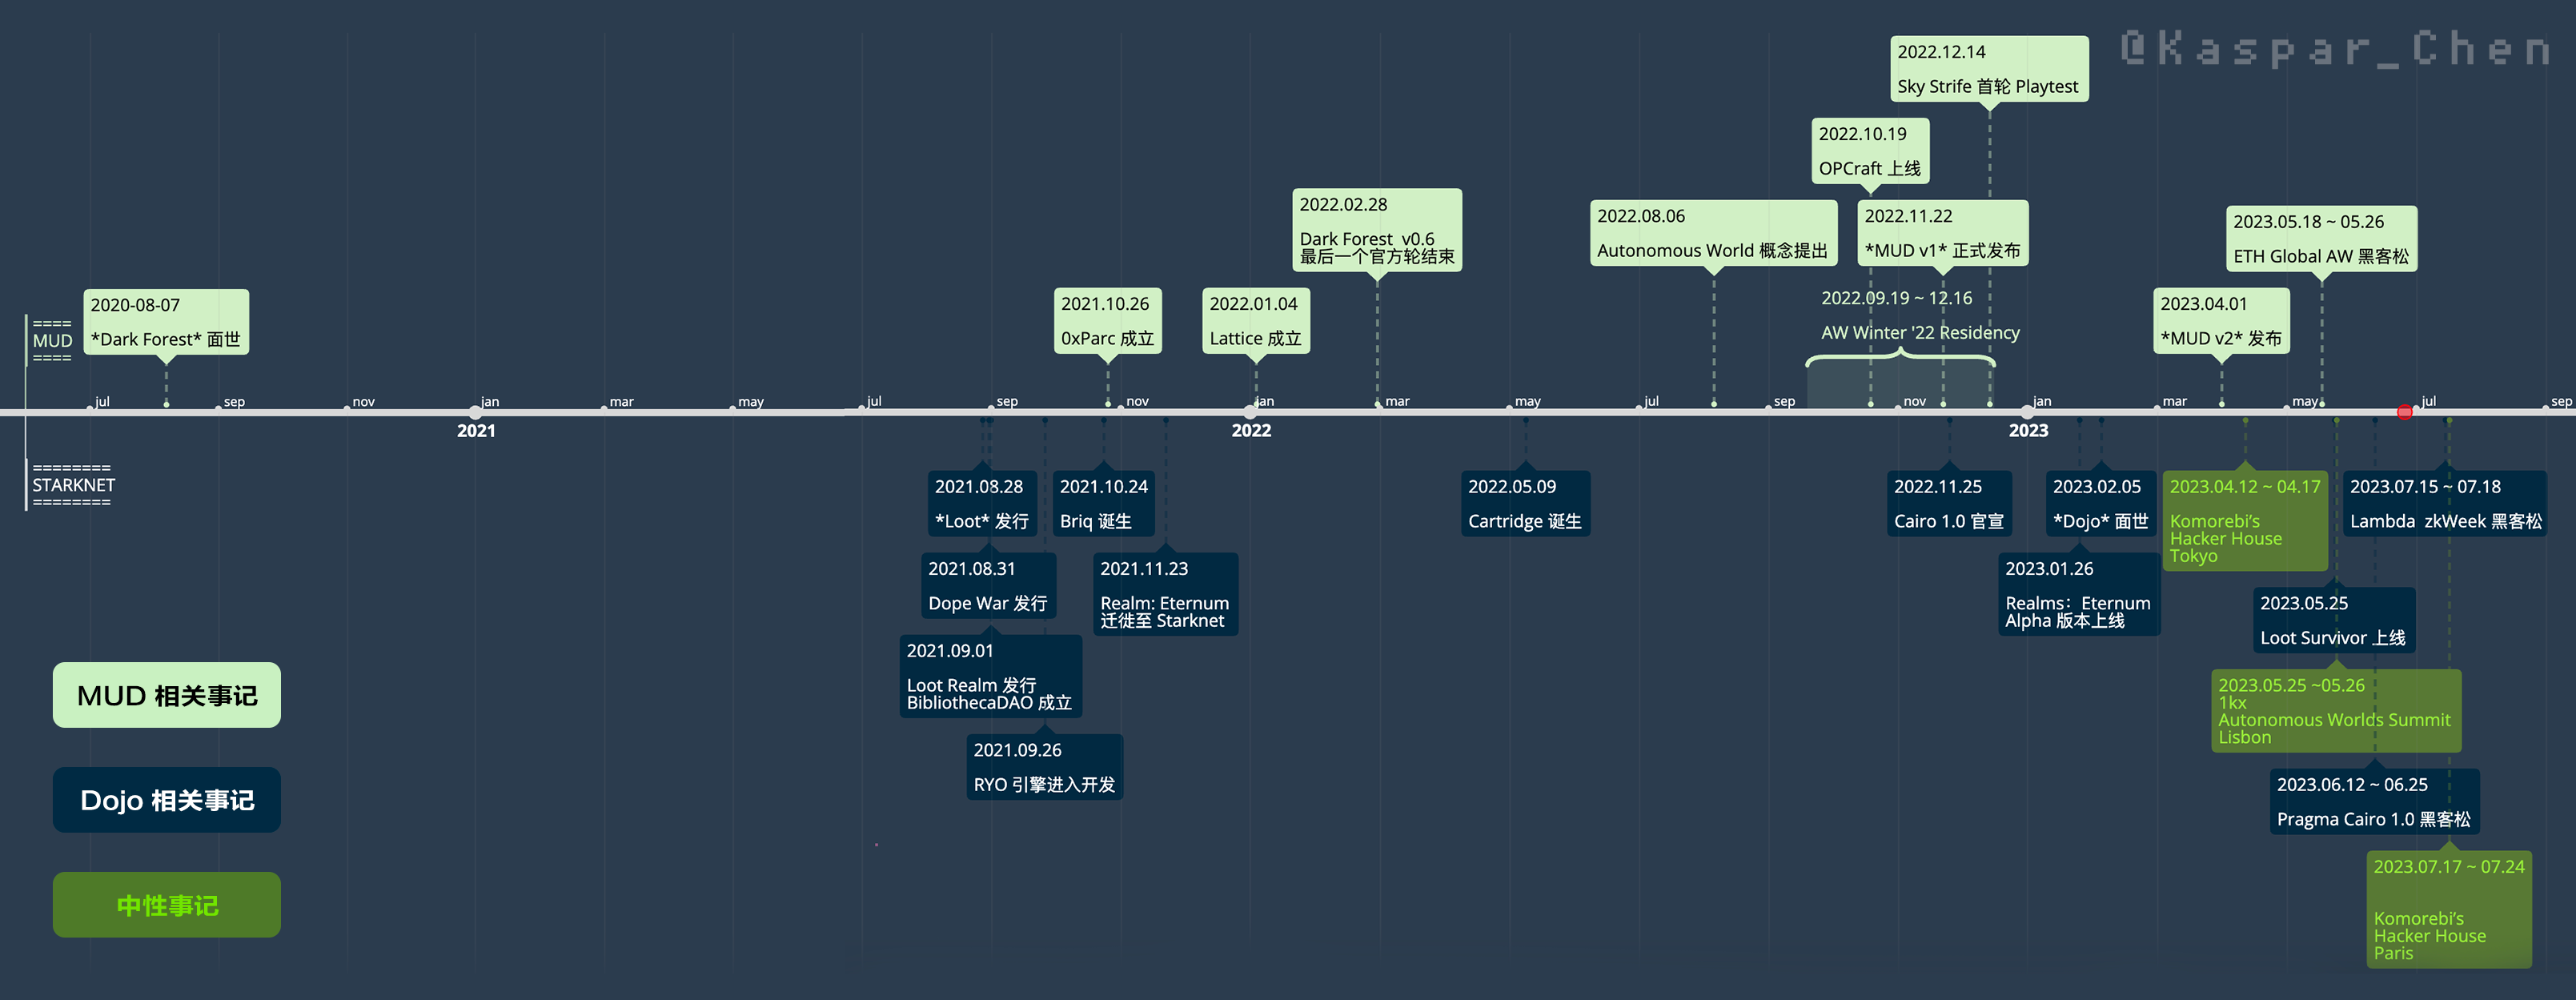 MUD & Dojo Timeline